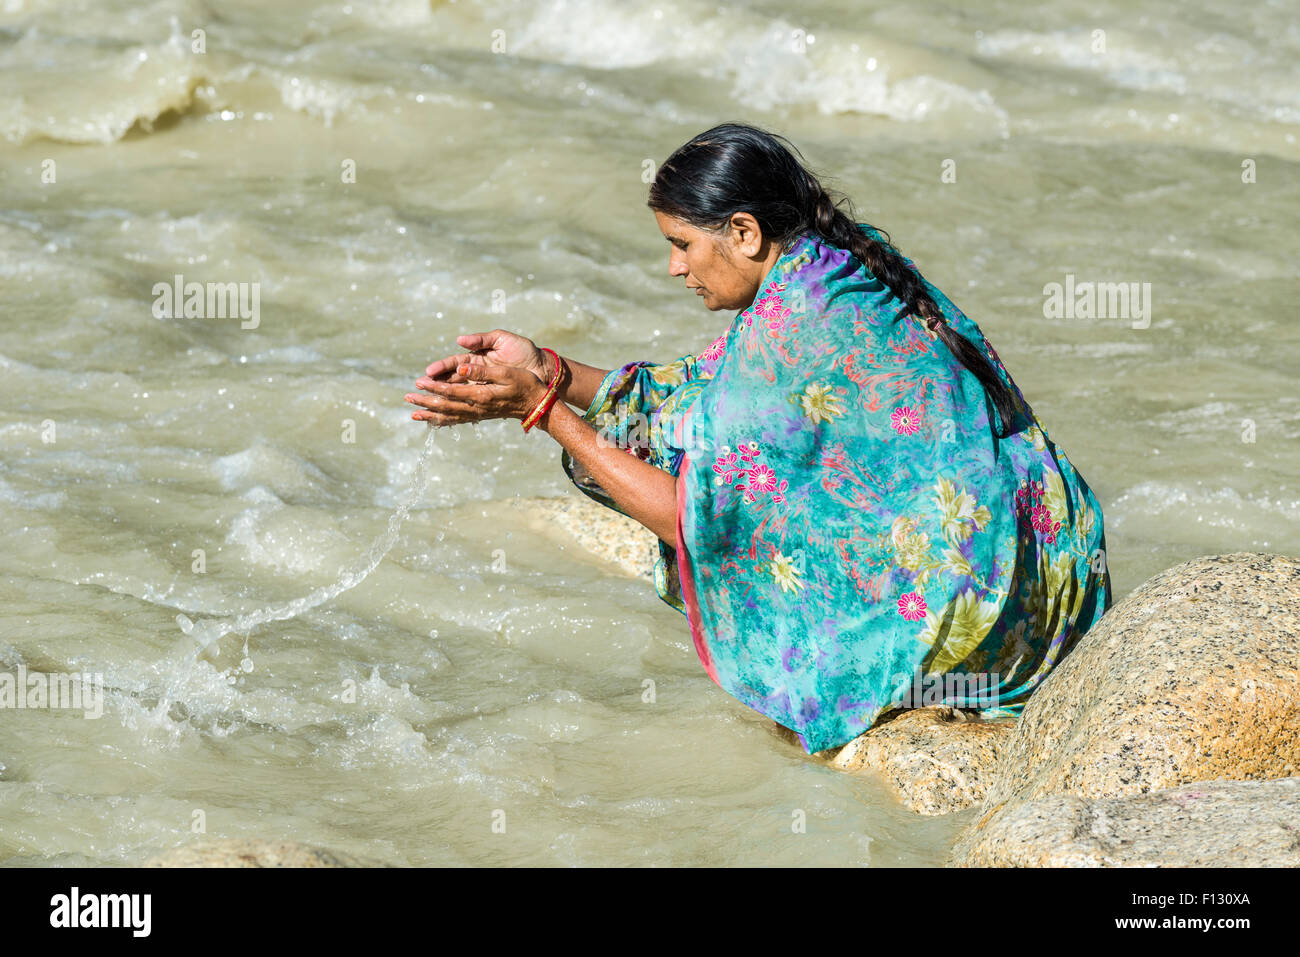 Un pèlerin femelle sur les rives du Gange est prier, offrant l'eau sainte, Gangotri, Uttarakhand, Inde Banque D'Images